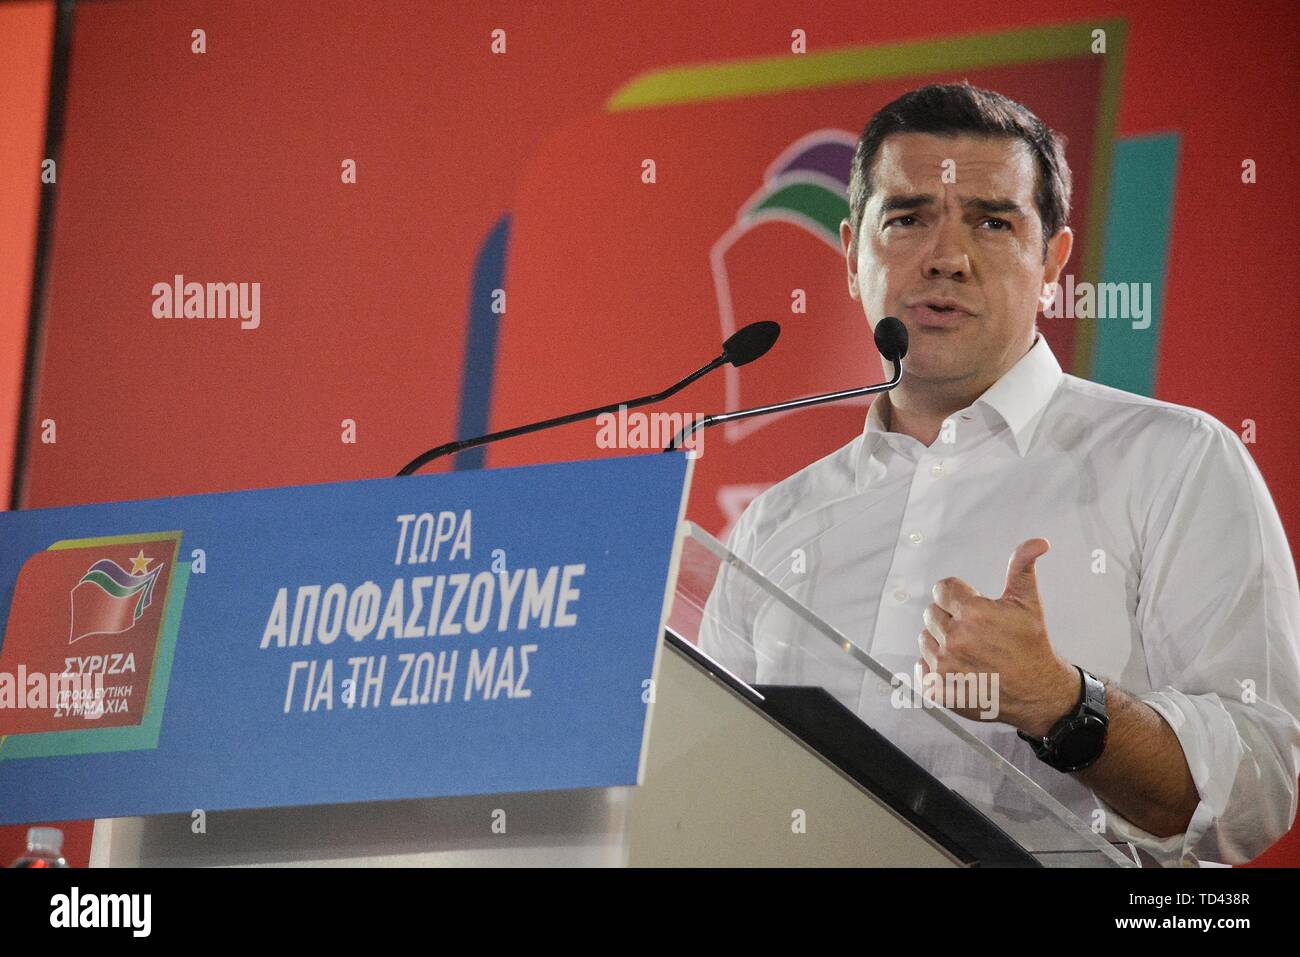 Primo Ministro greco, Alexis Tsipras, parla mentre facendo un gesto durante la presentazione di un programma politico di SYRIZA a Atene Concert Hall. Foto Stock